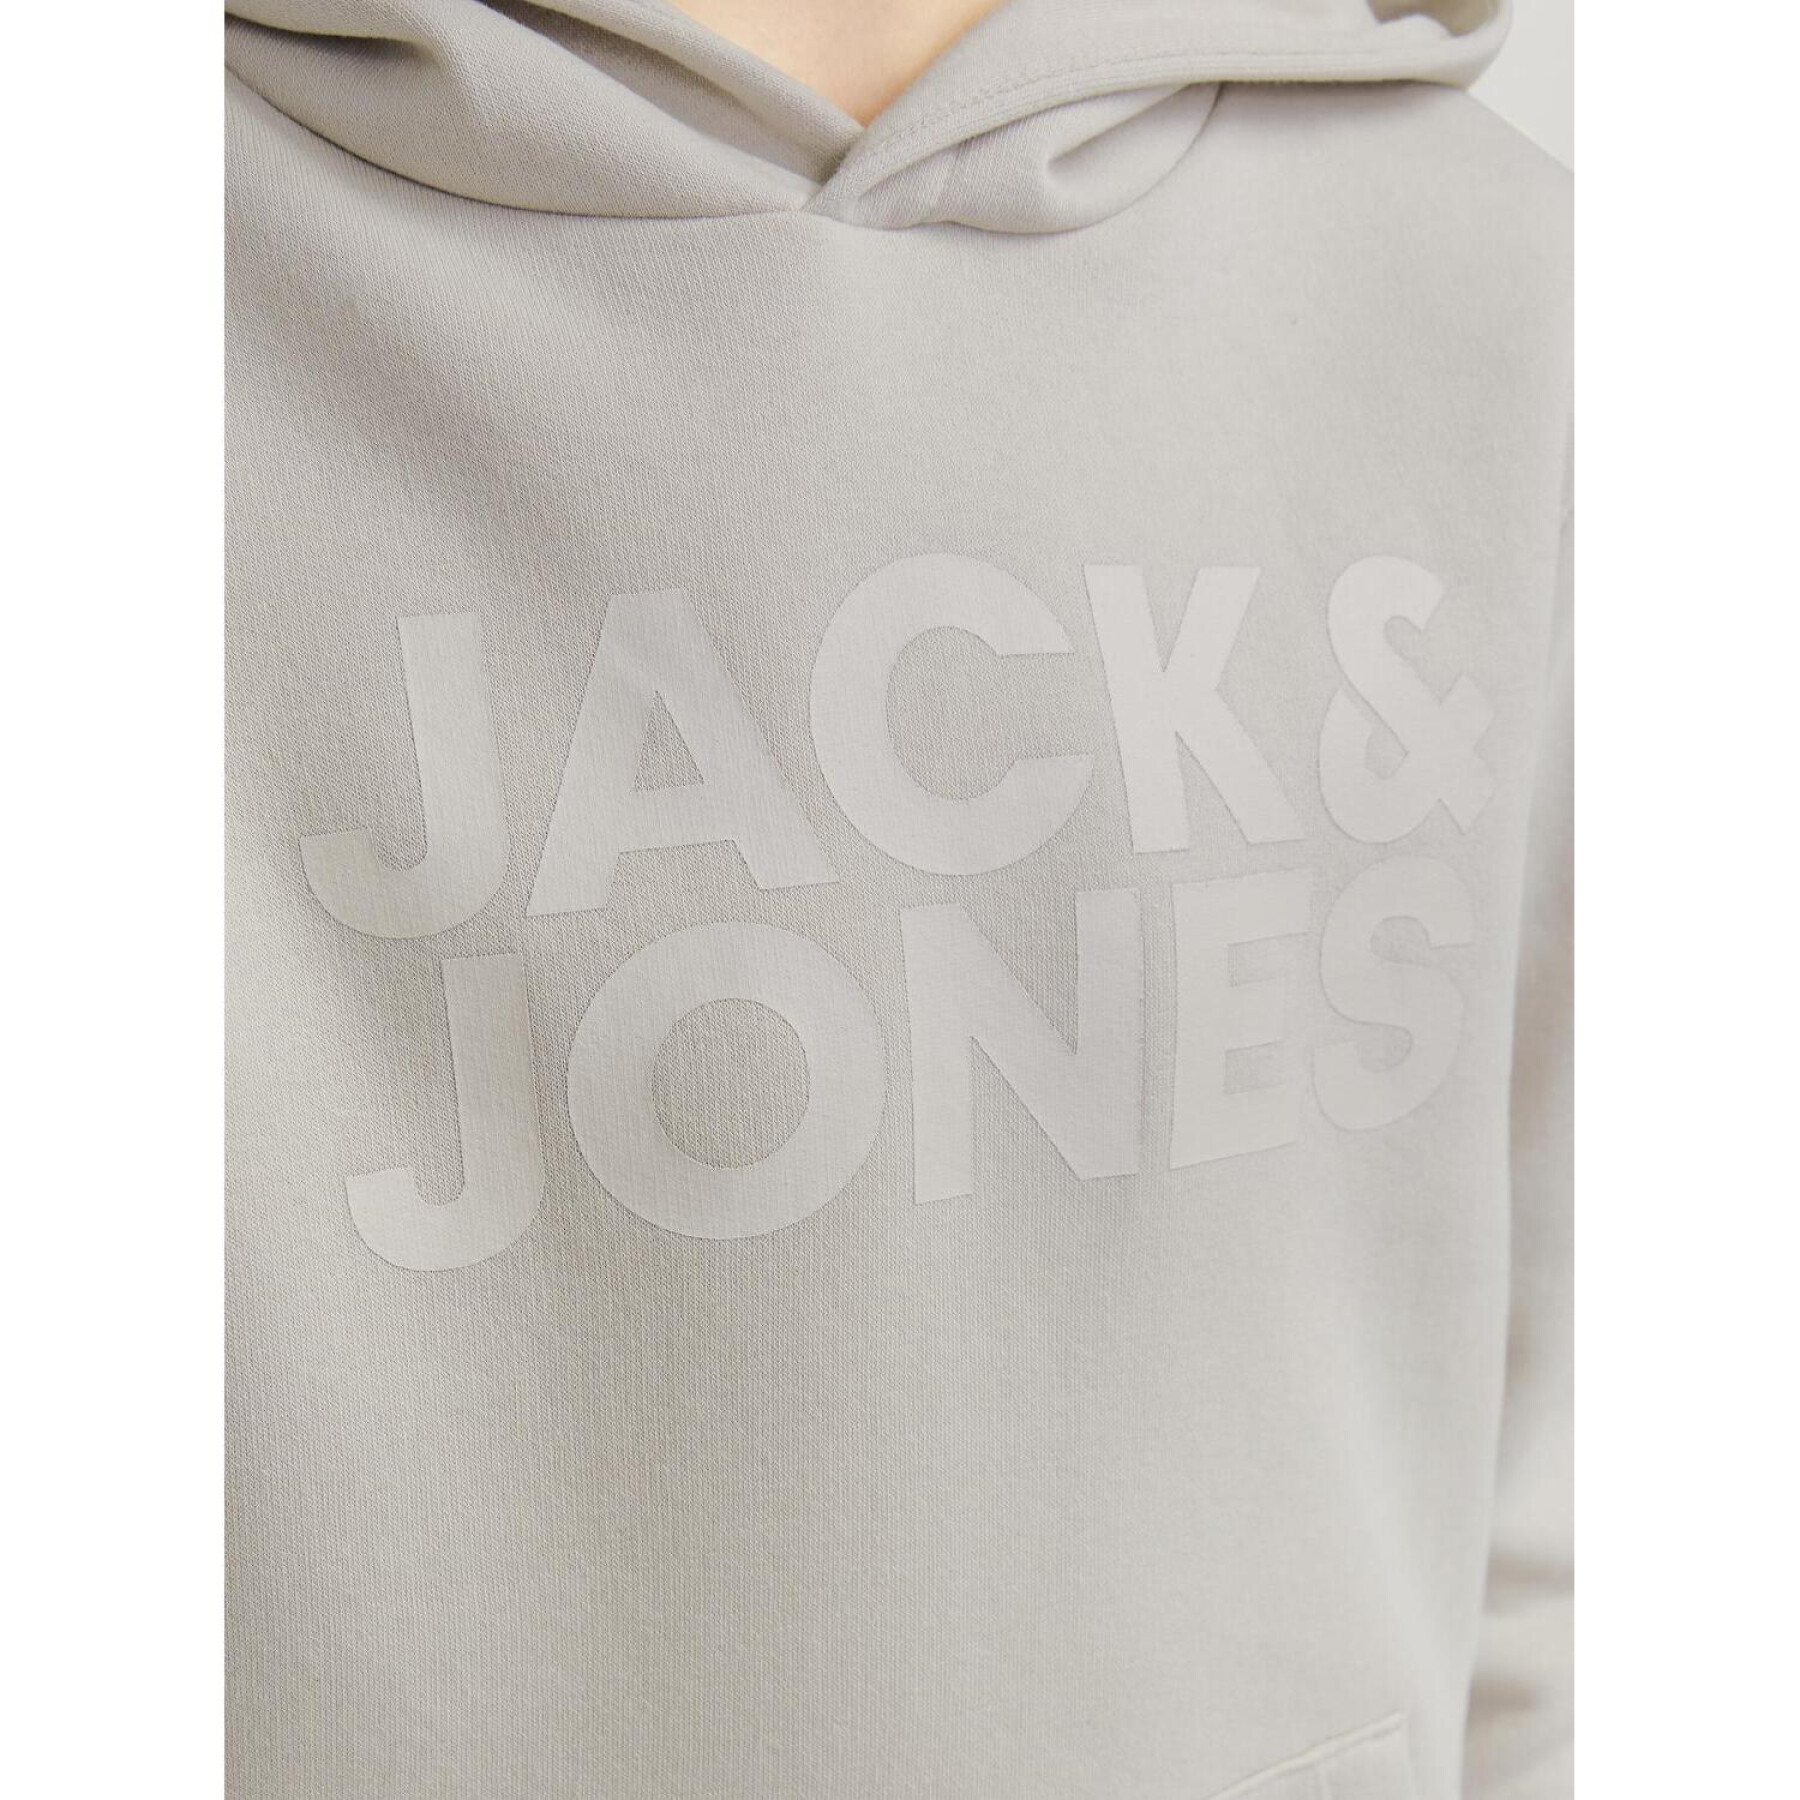 Hooded sweatshirt with children's logo Jack & Jones Corp